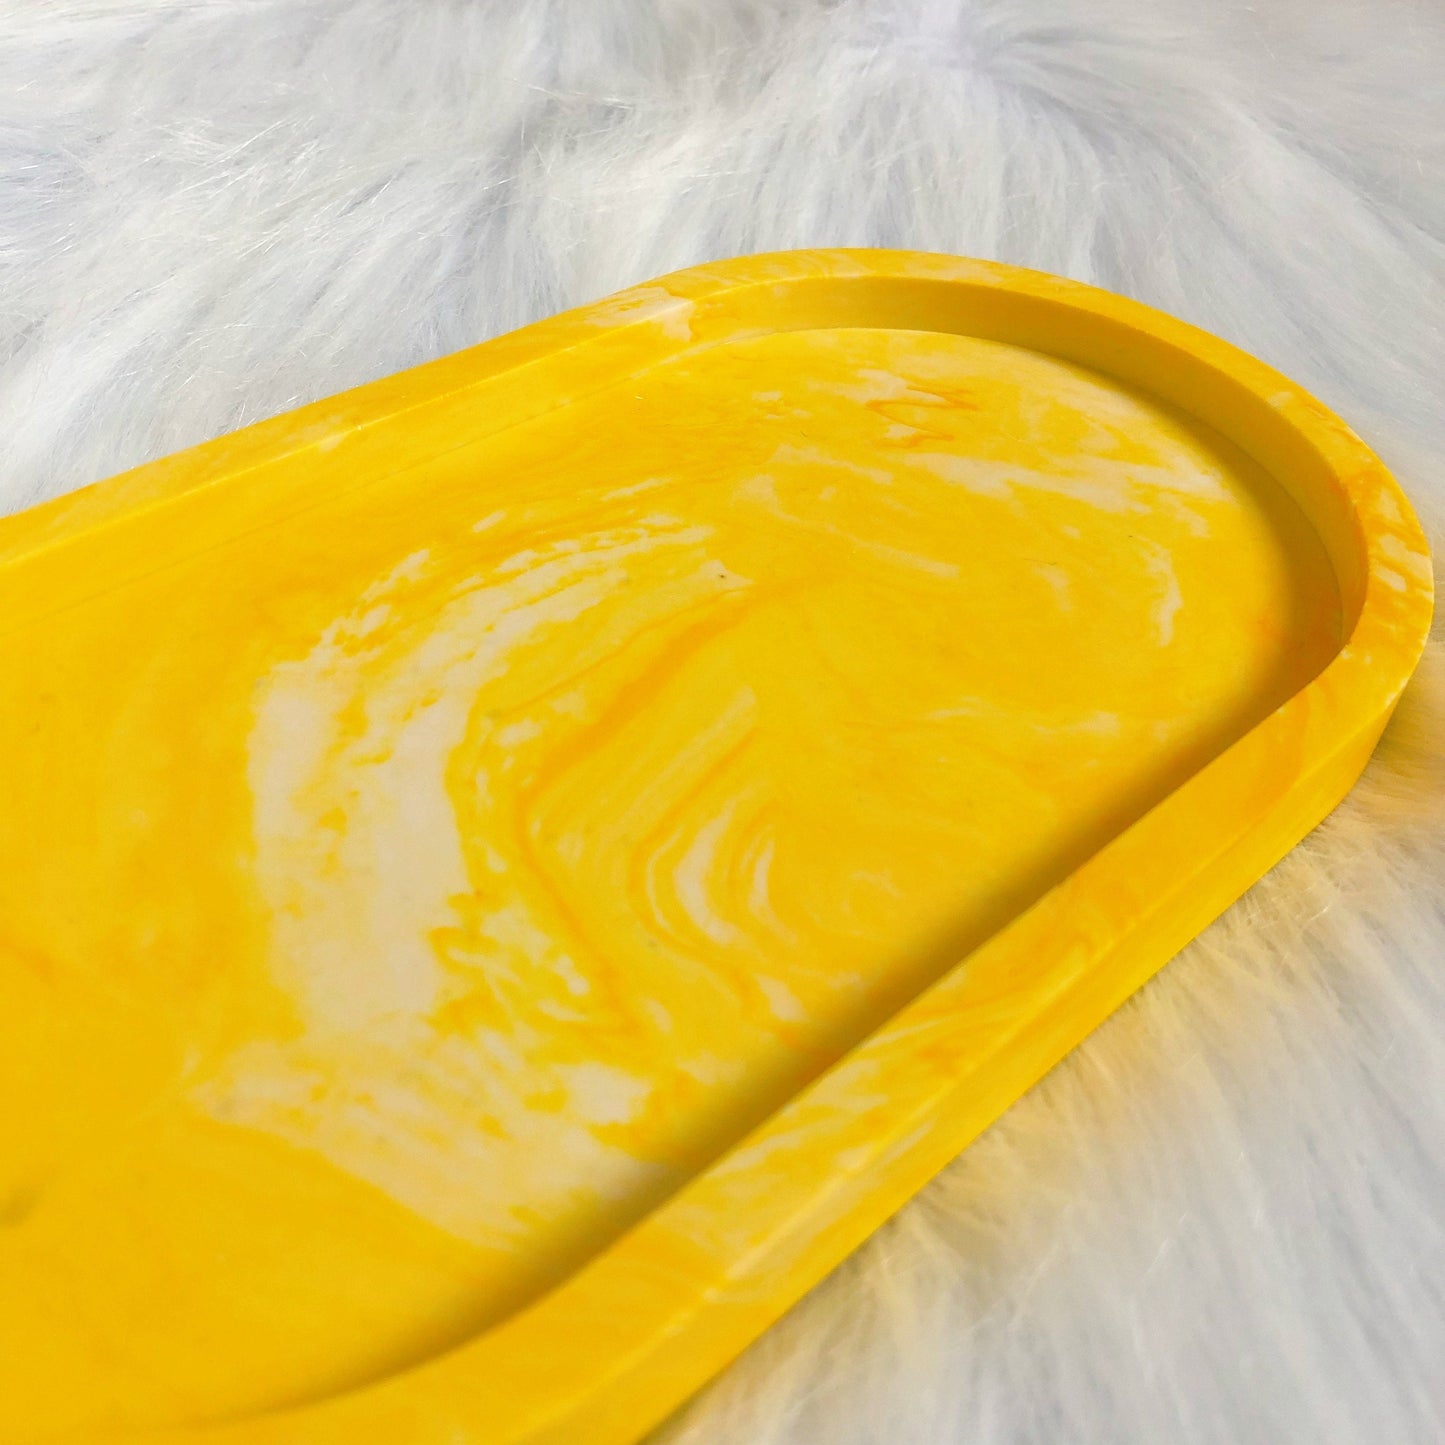 Yellow Marble Tray Coaster